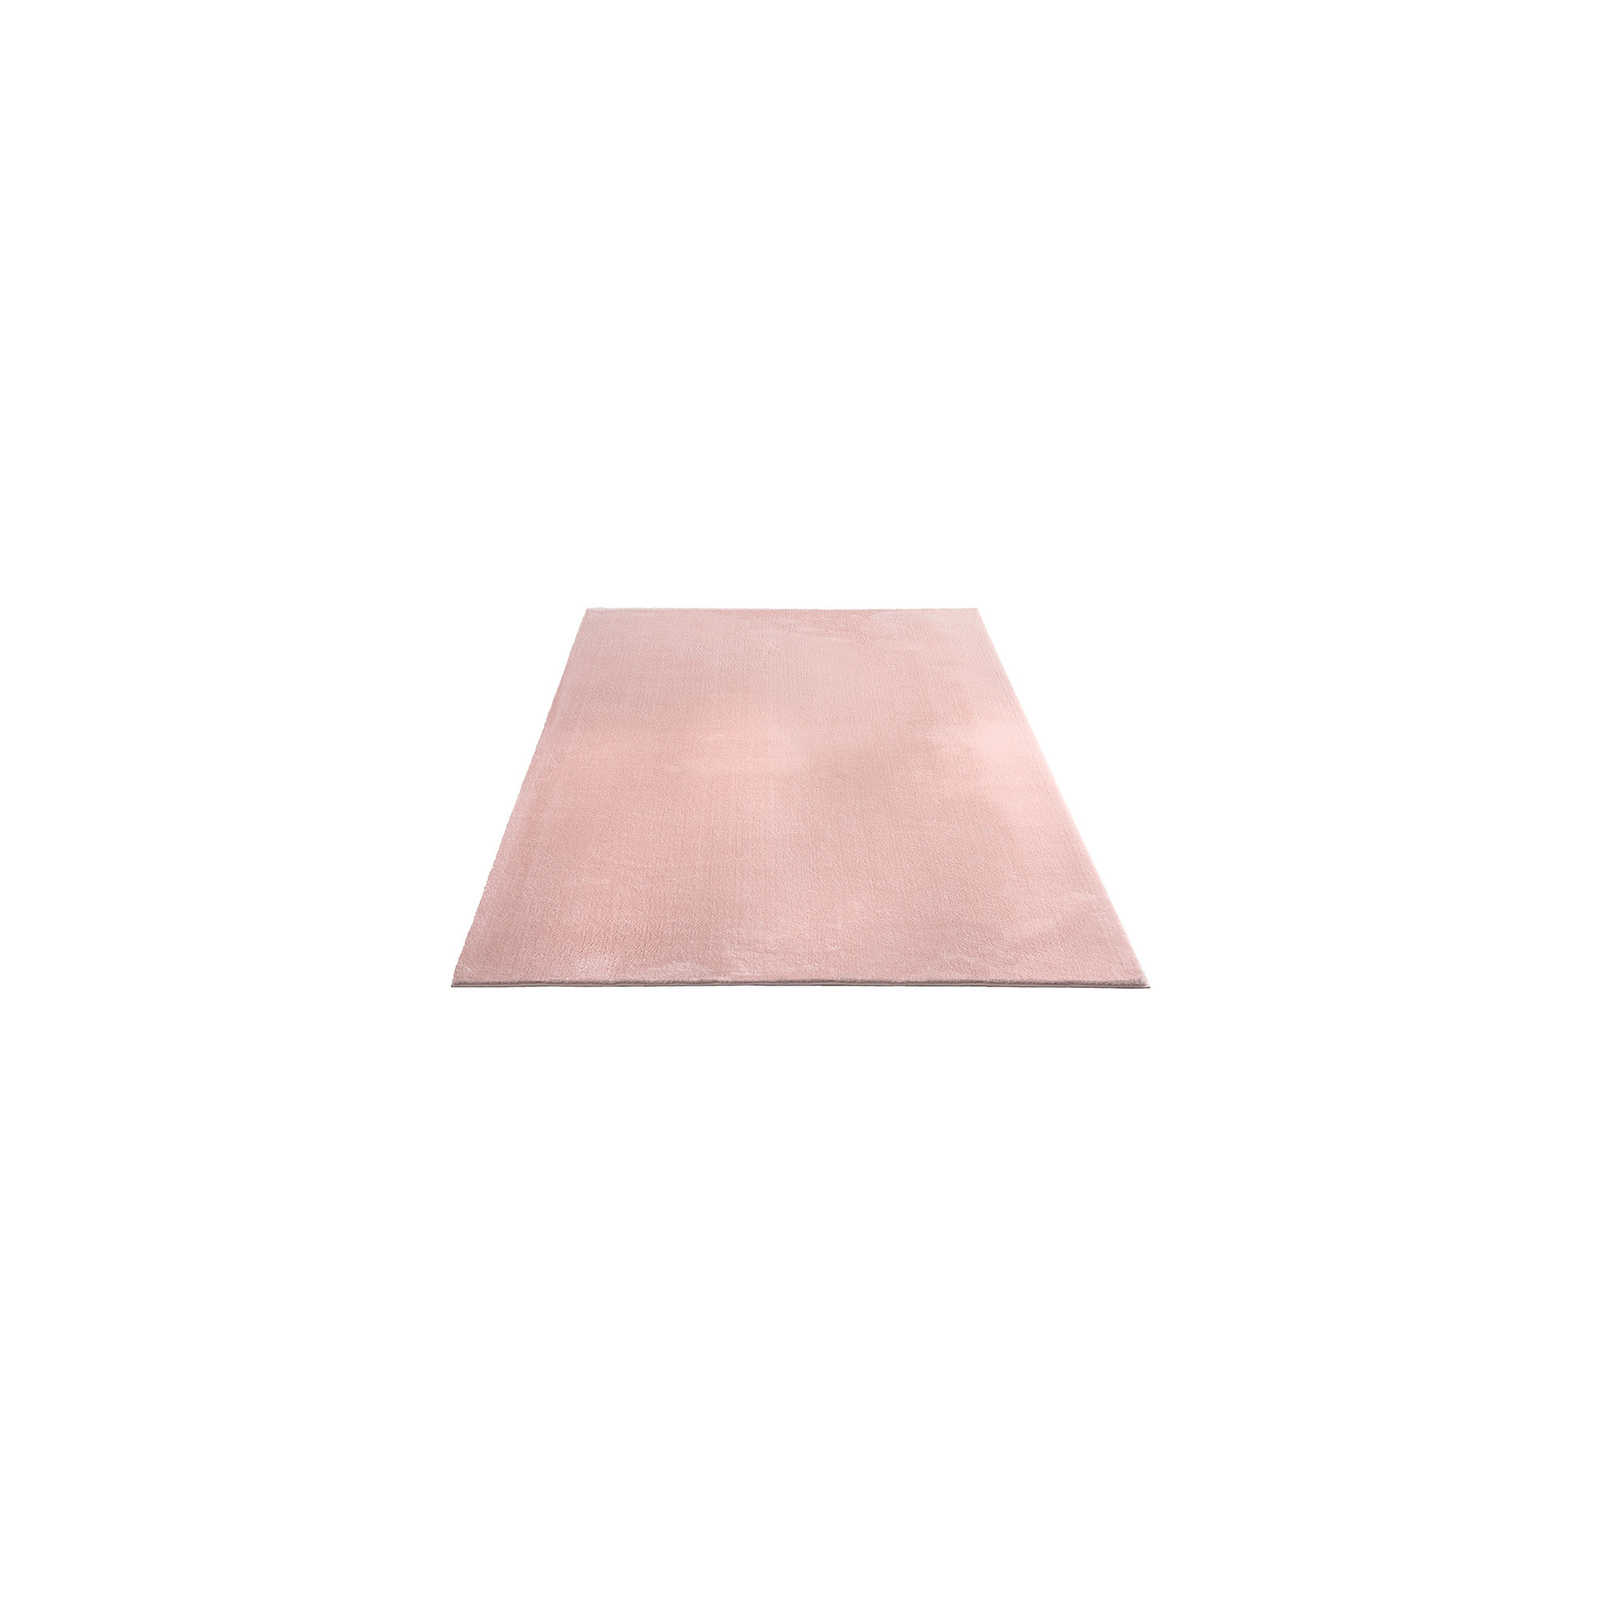 Fijnpolig tapijt in roze - 150 x 80 cm
